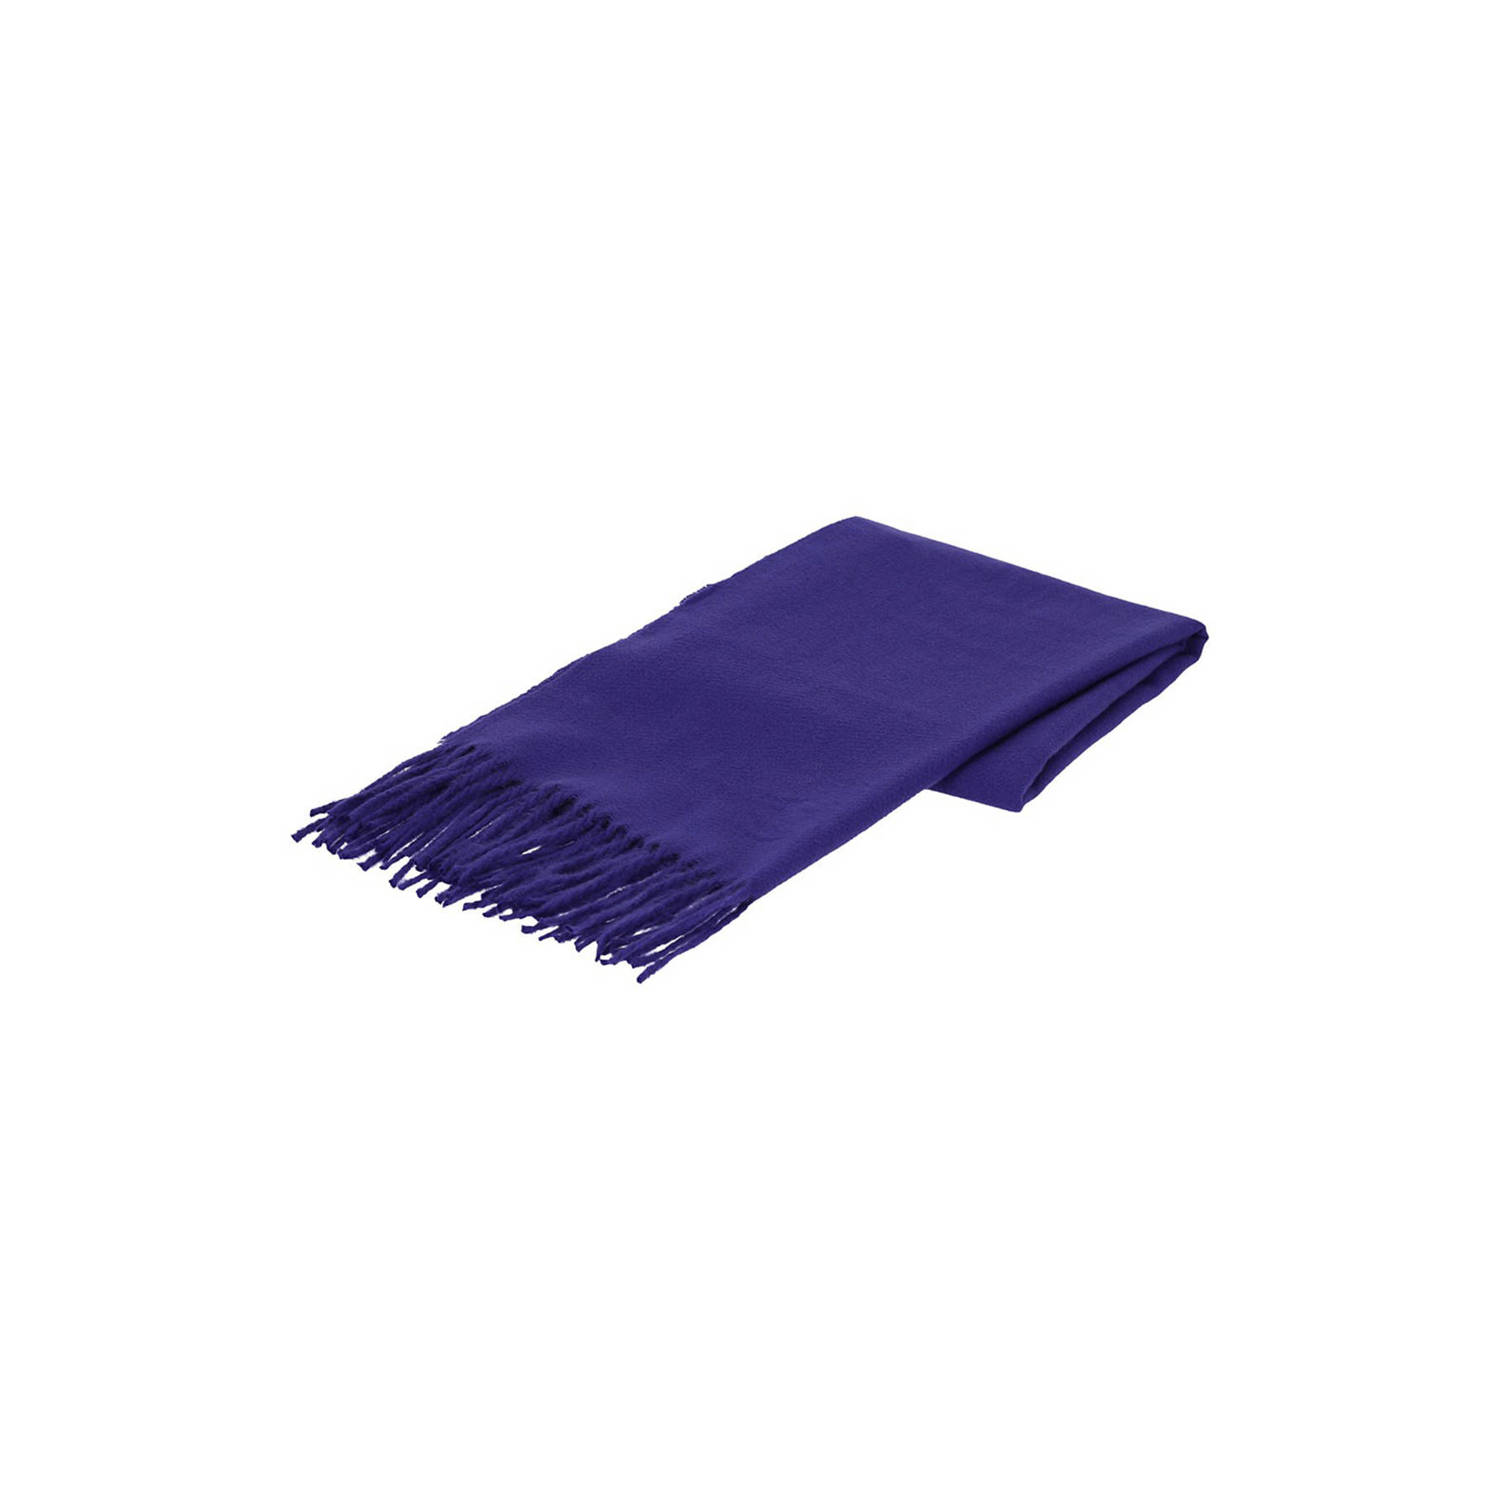 Sarlini sjaal met franjes kobaltblauw